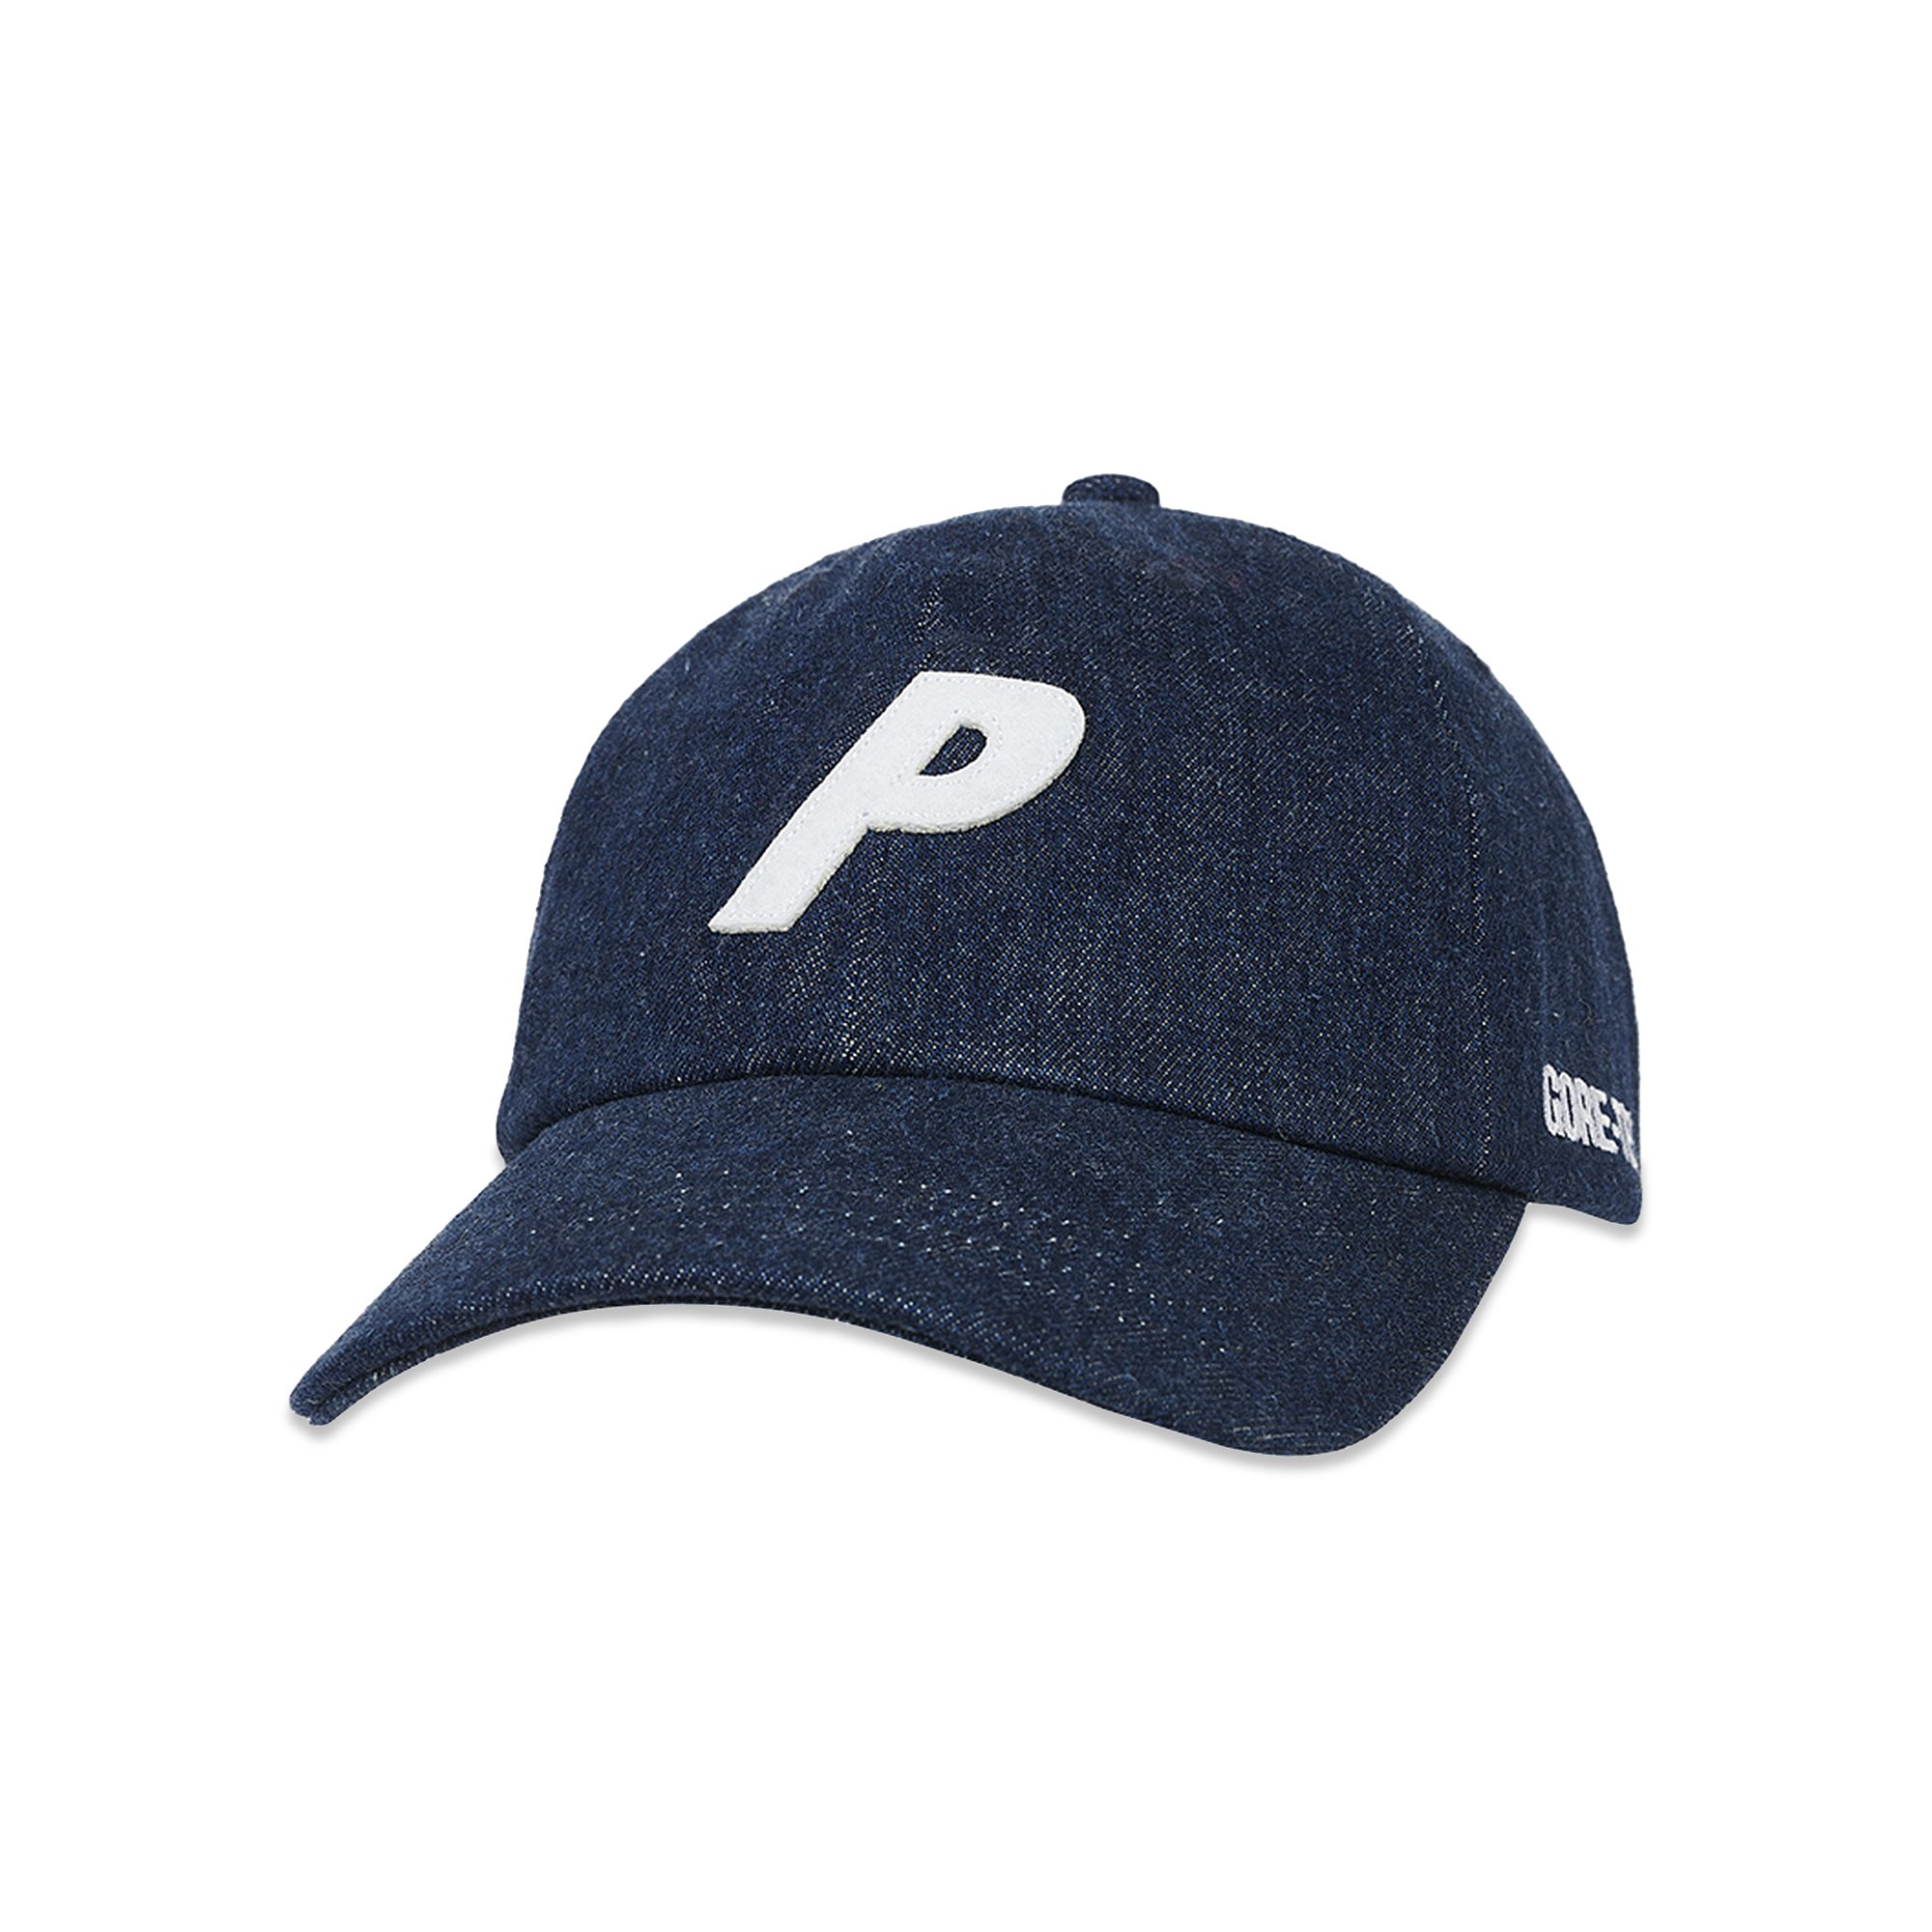 即納・正規品 PALACE GORE-TEX cap p logo キャップ - 帽子